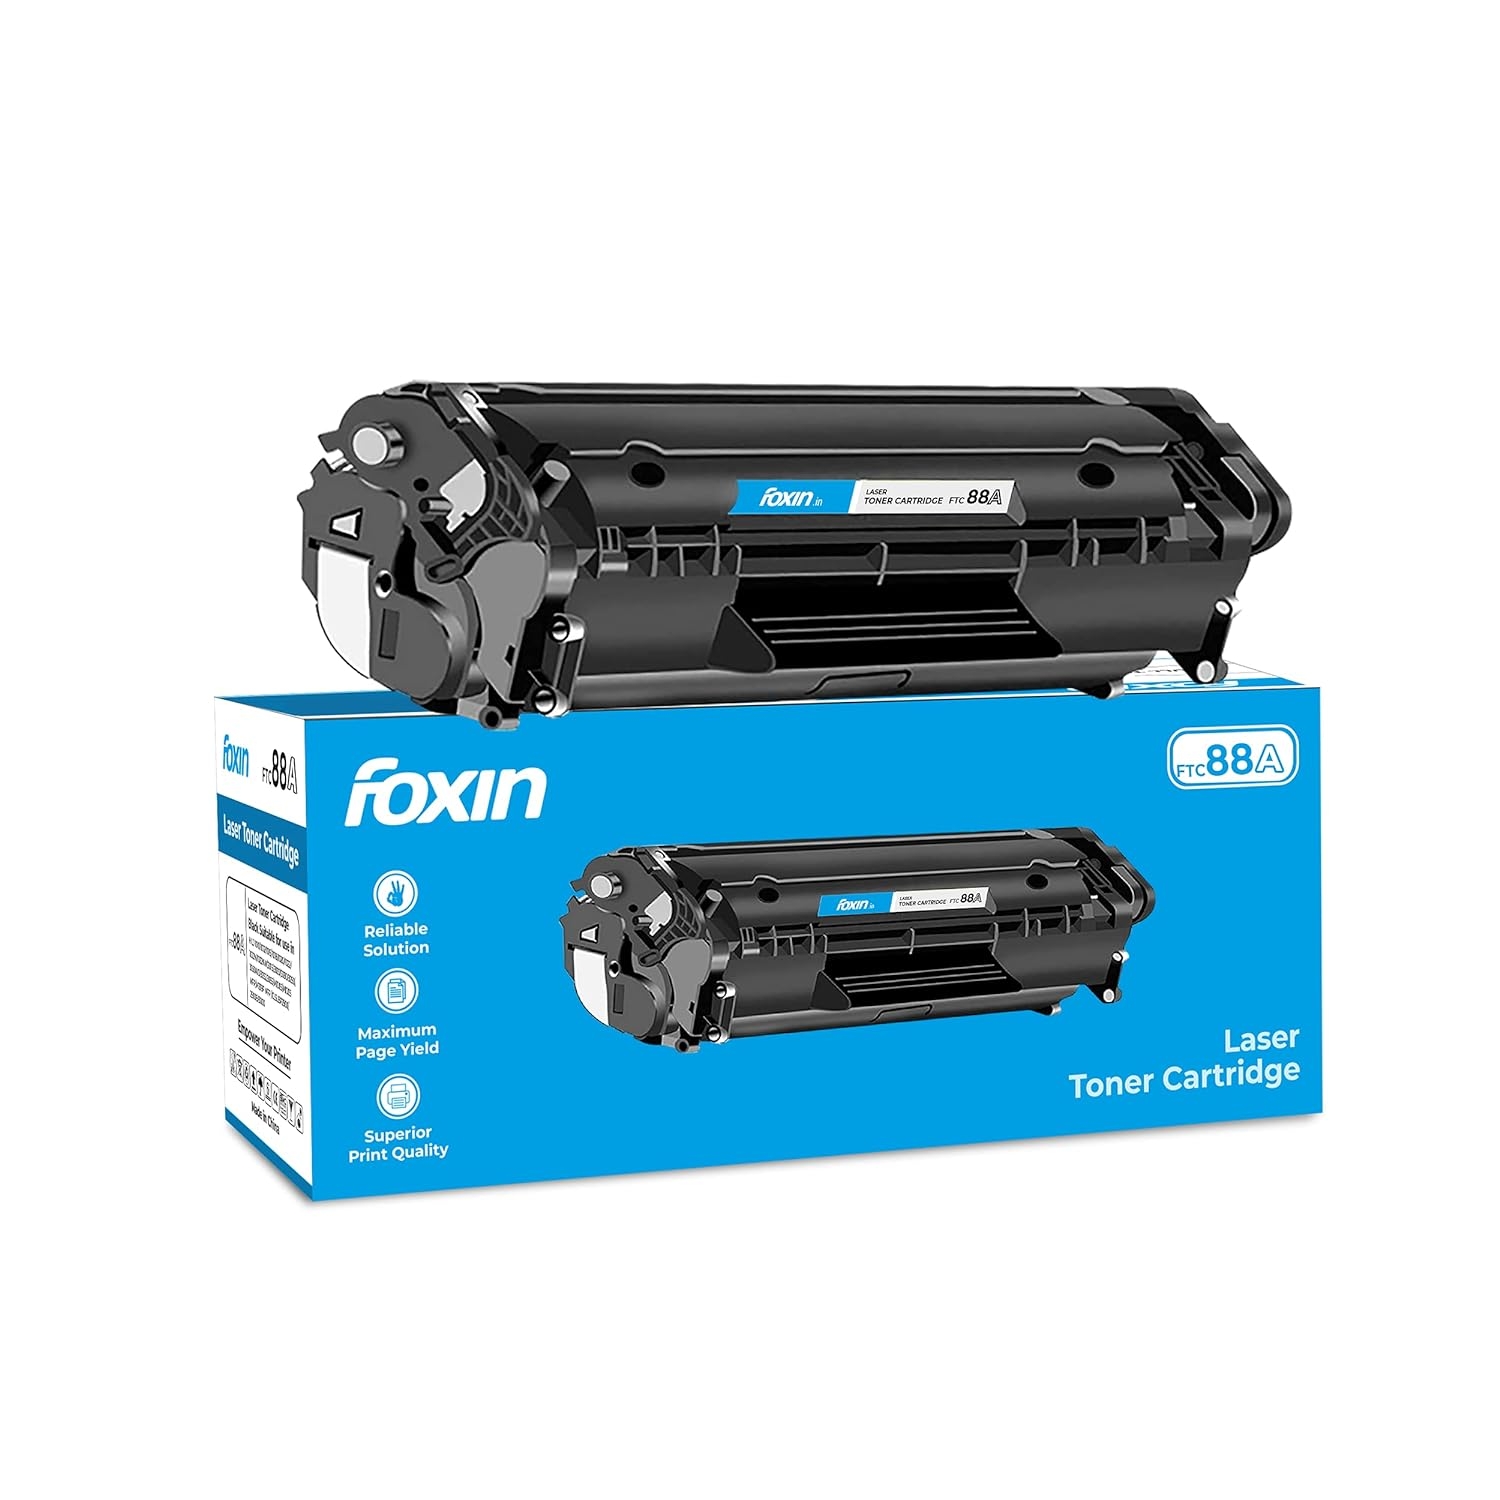 Foxin FTC 88A/CC388A Black Laser Toner Cartridge for HP Laserjet Printer M1136, MFP, P1007, P1106, P1108, P1008, M1213nf, MFP, M126nw MFP, M1218nfs, M128fw MFP, M128fn, MFP, M226DW, M226DN